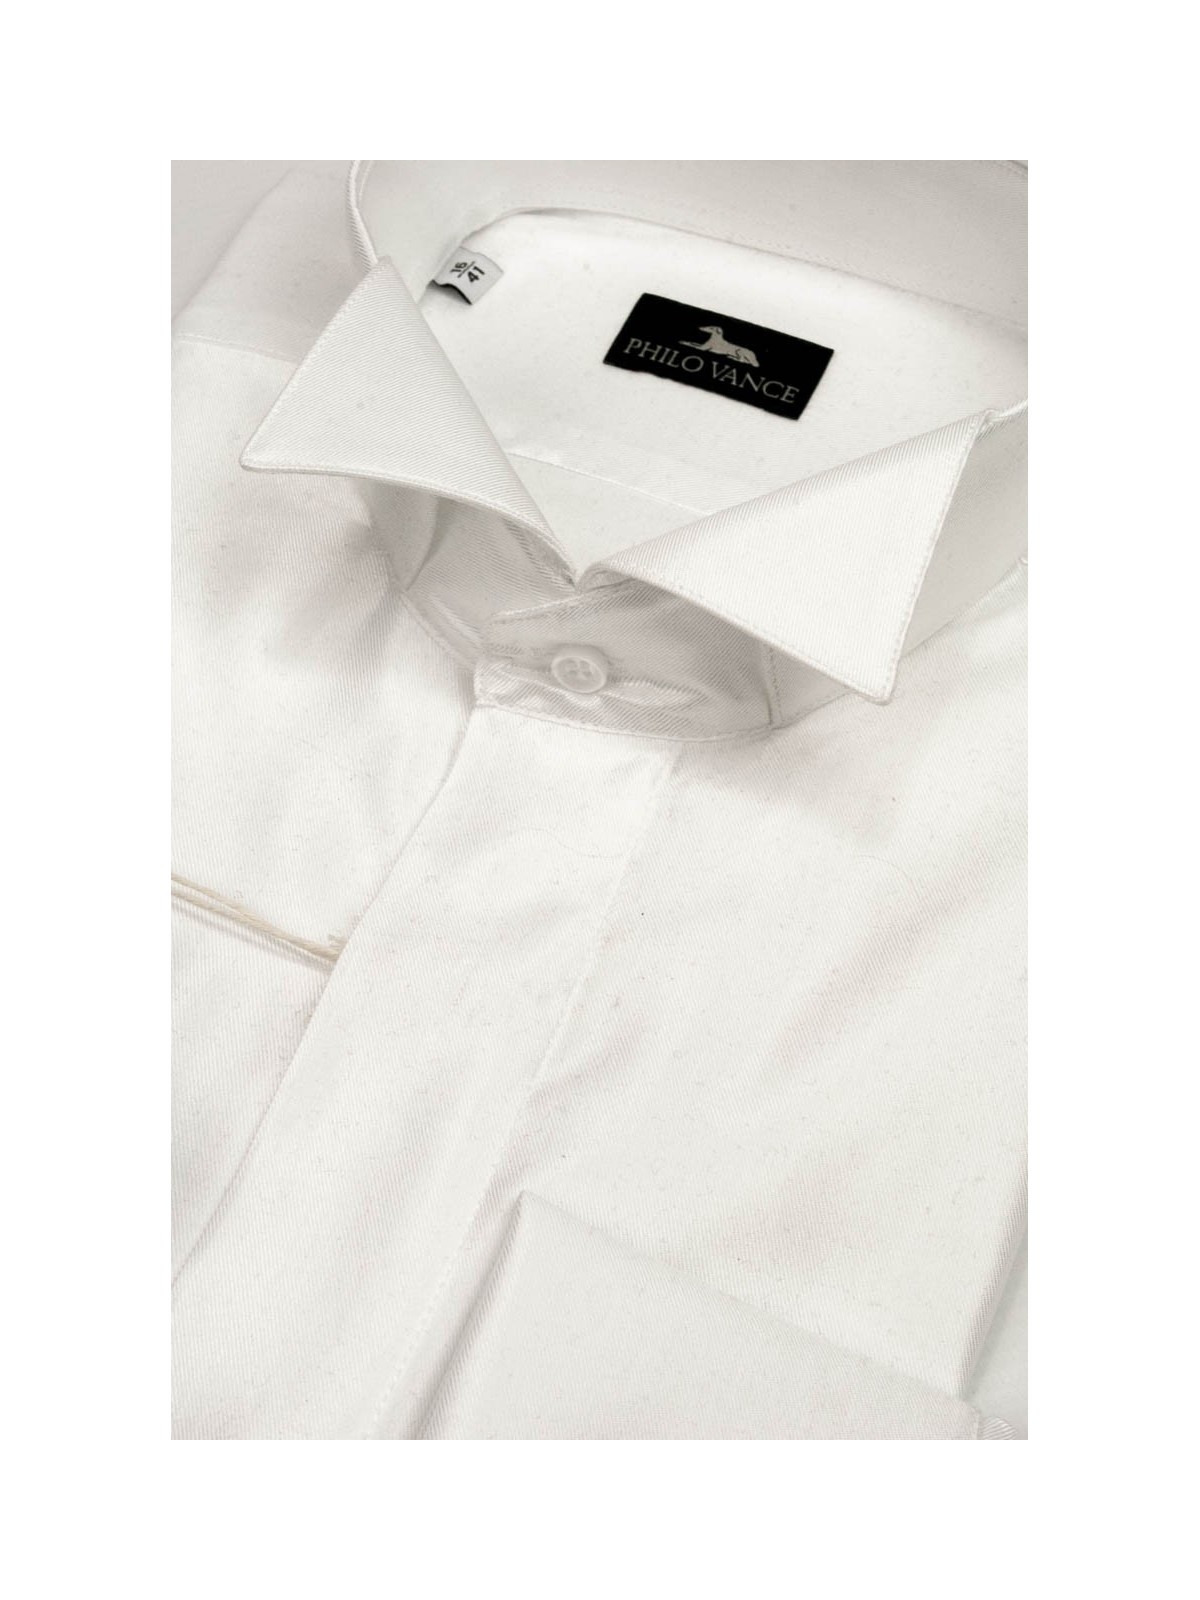 Heren smoking overhemd met zwaluwstaart kraag in witte glanzende stof, maten 39-46